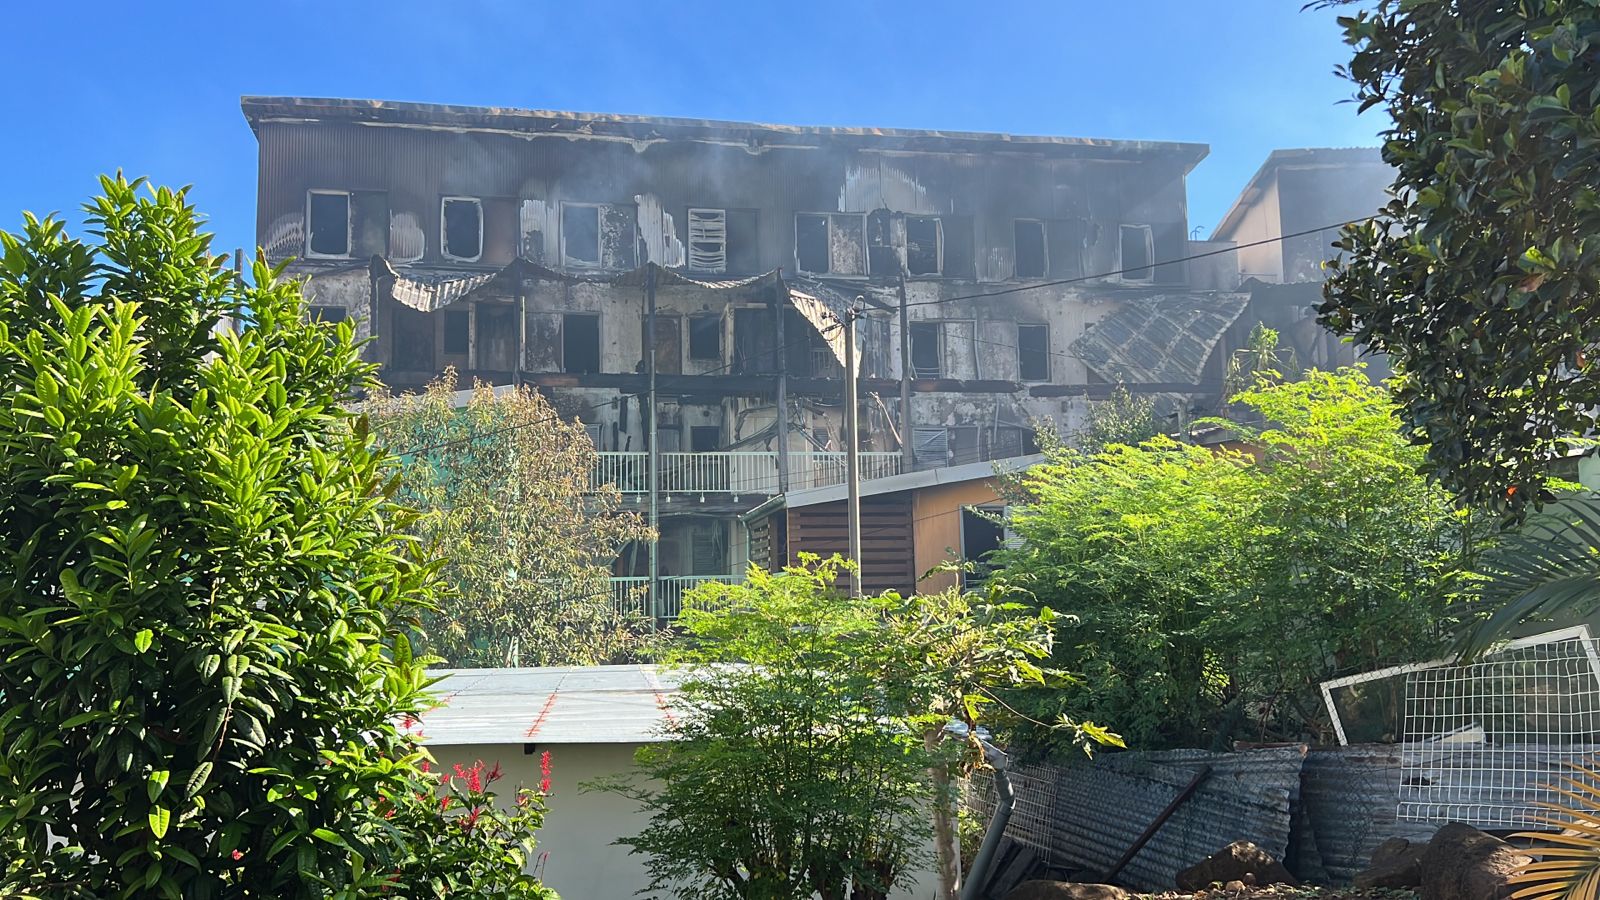 Incendie mortel à St-Denis : L'adolescent de 16 ans est le suspect principal